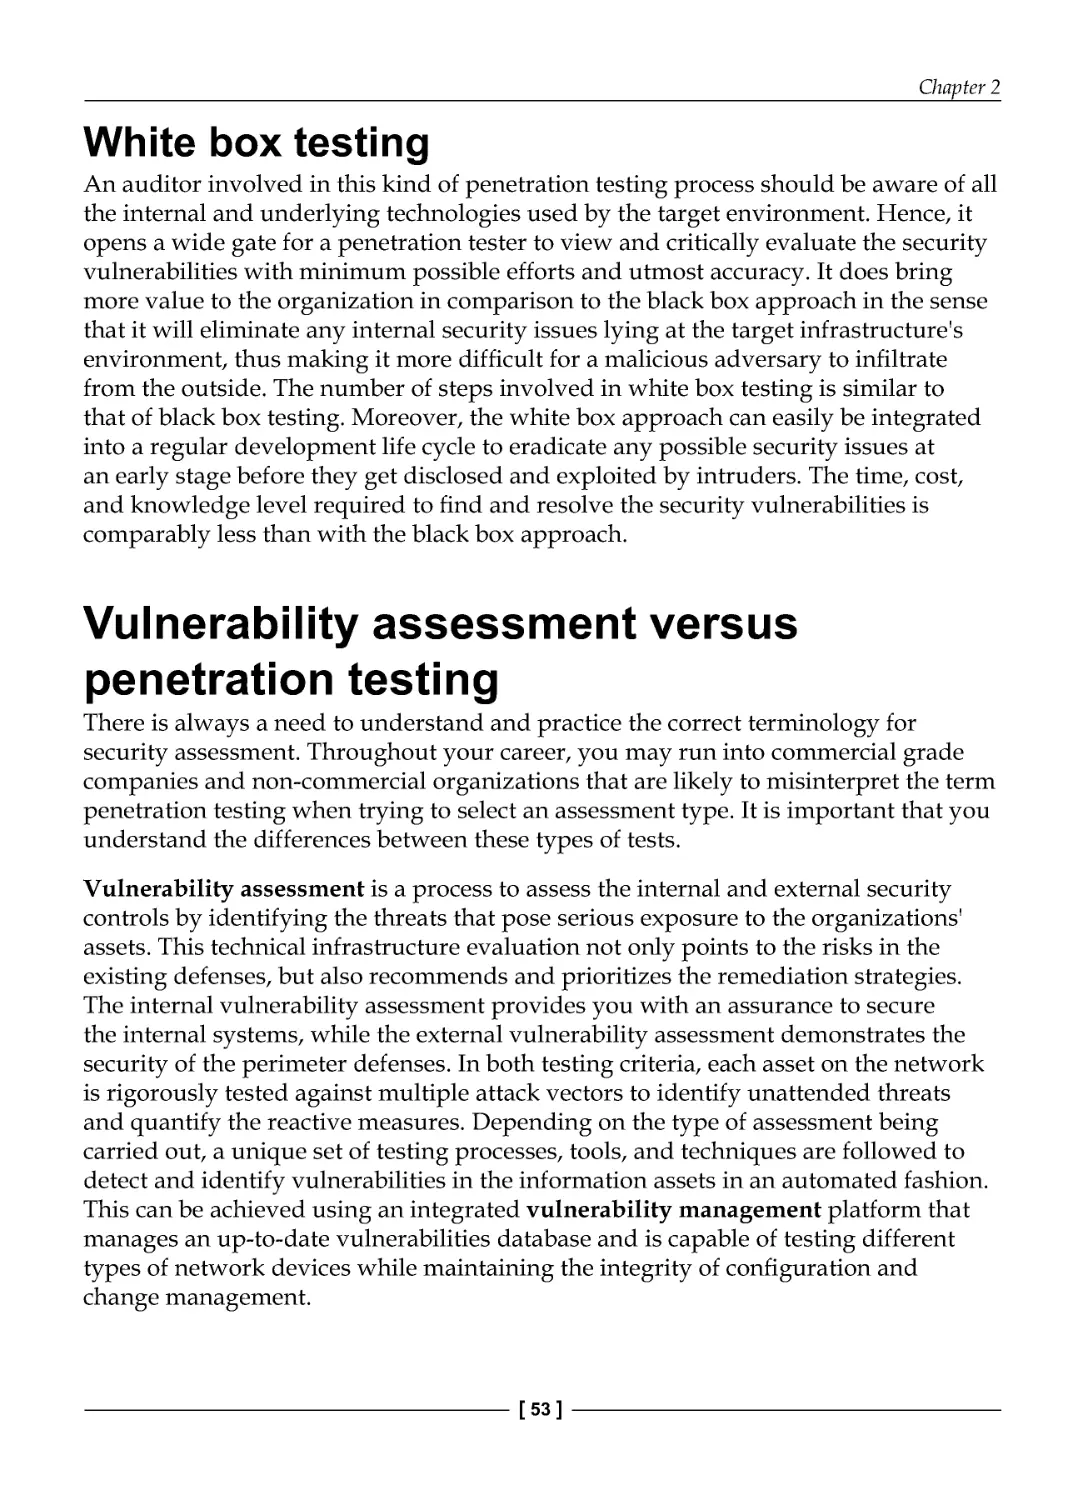 White box testing
Vulnerability assessment versus penetration testing